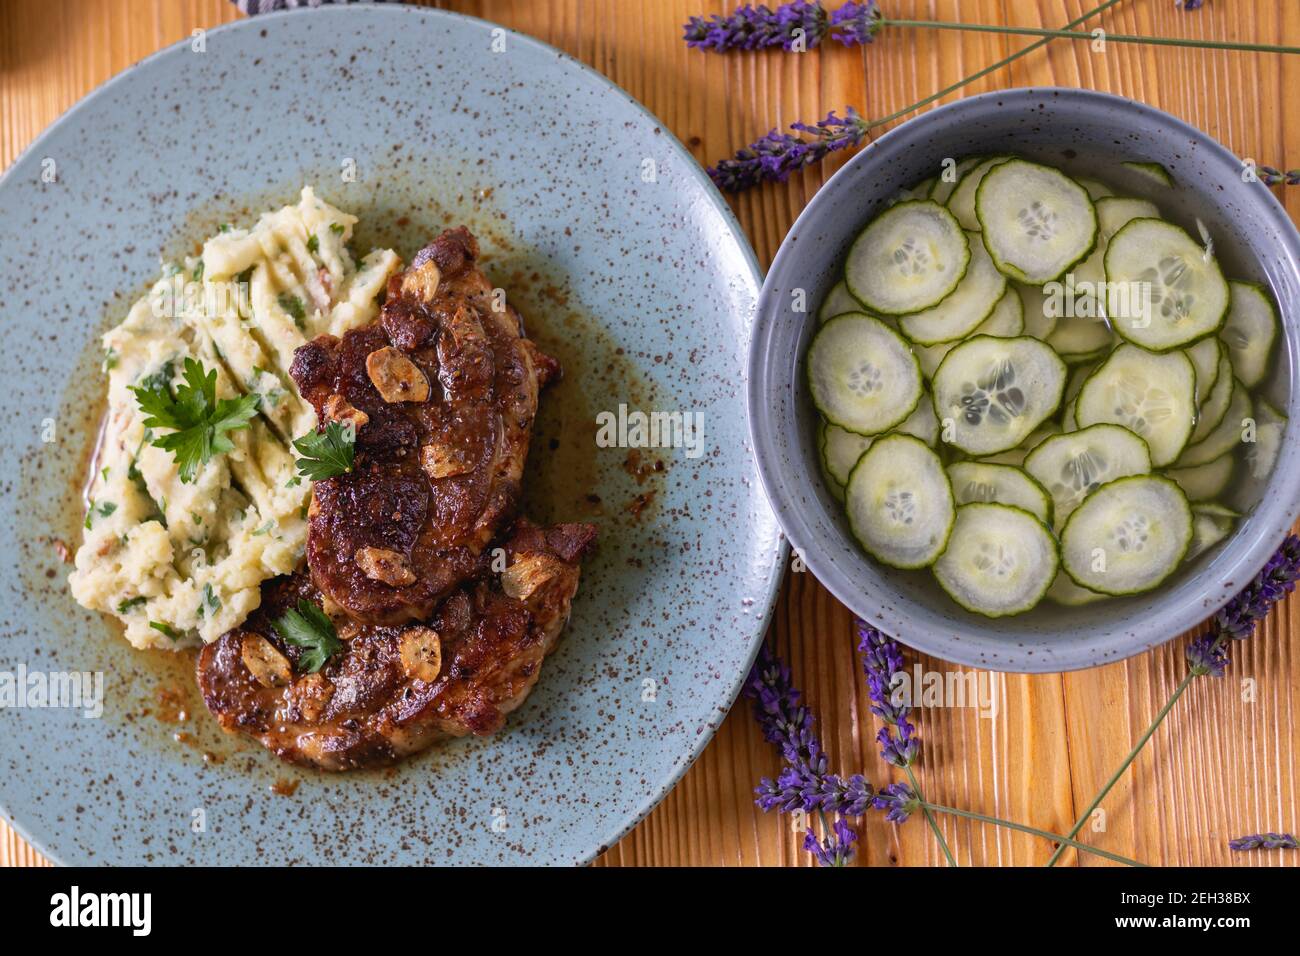 Encolure de porc cuite avec purée de pommes de terre et persil, bacon rôti et salade de concombres. Banque D'Images